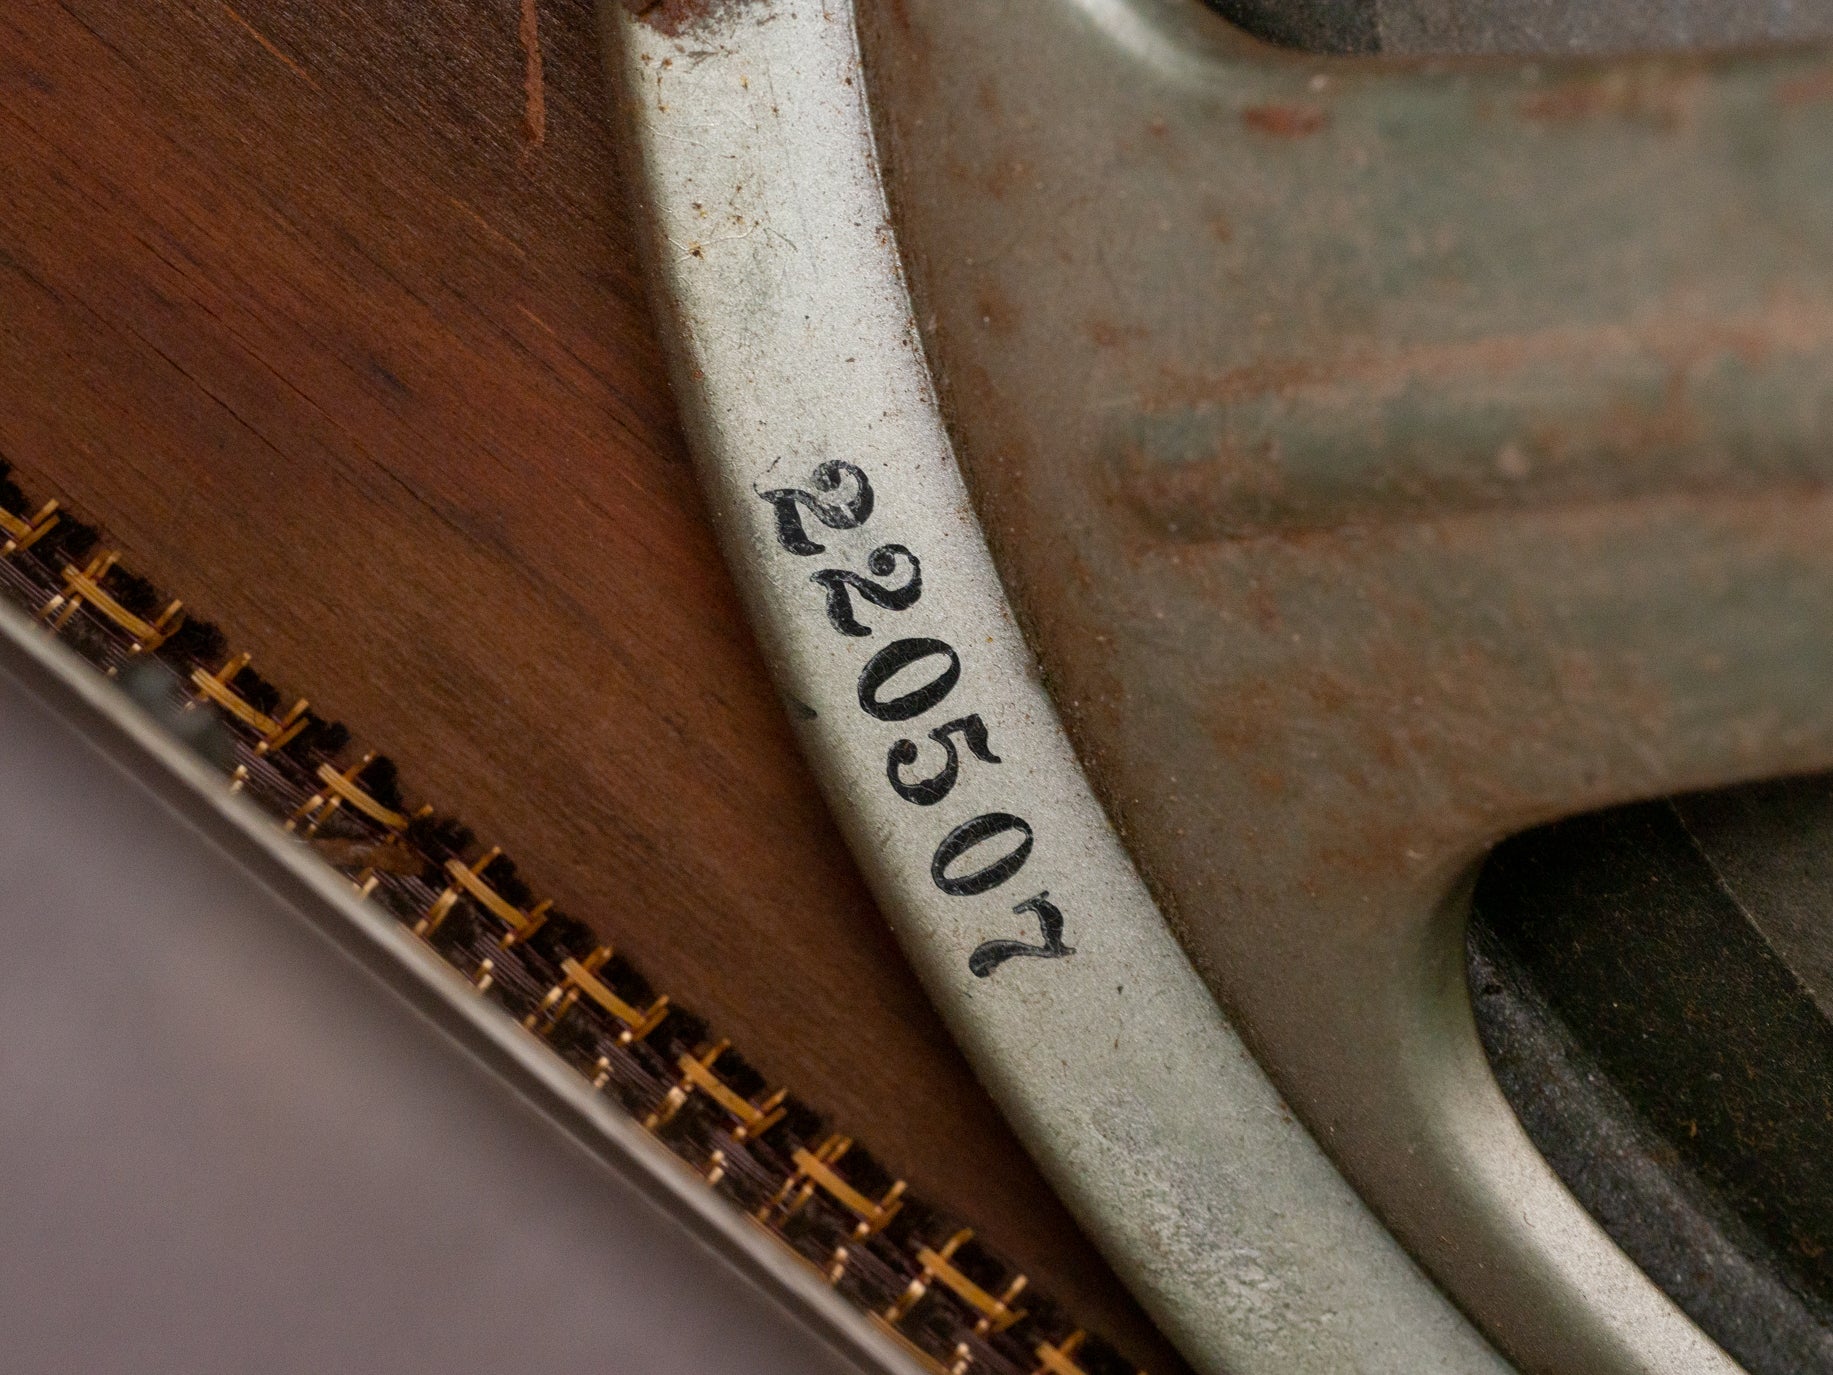 1965 Gibson Falcon Amplifier